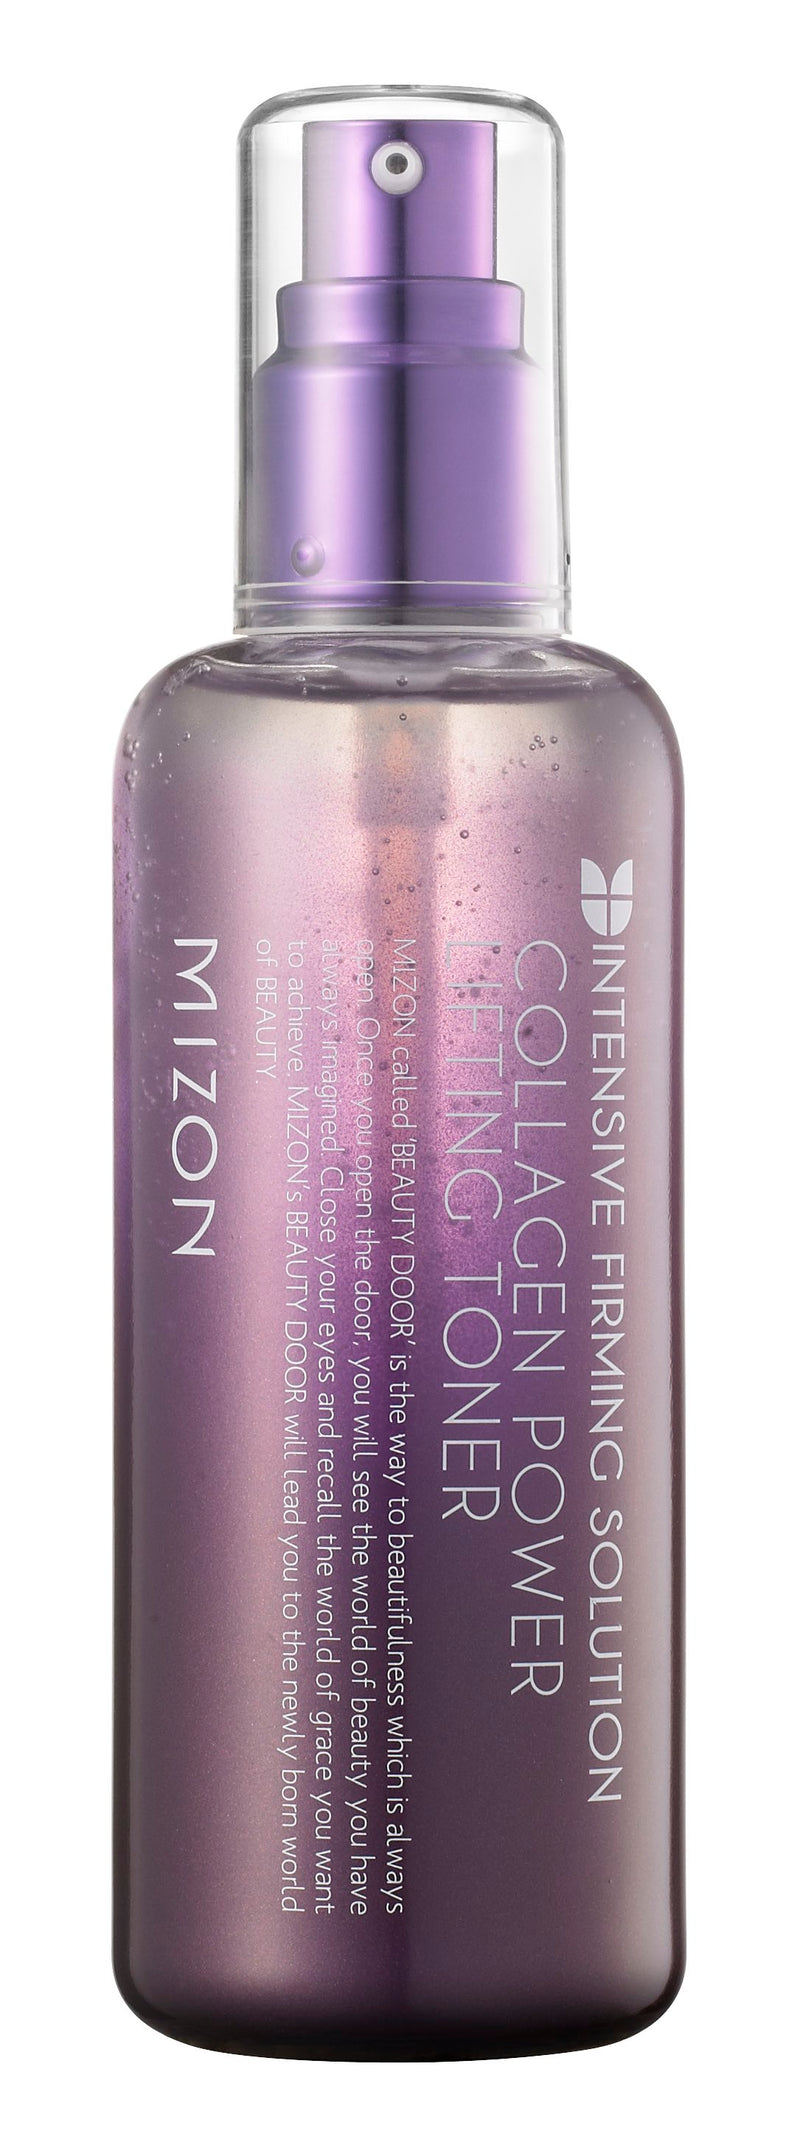 MIZON Collagen Power Lifting Toner